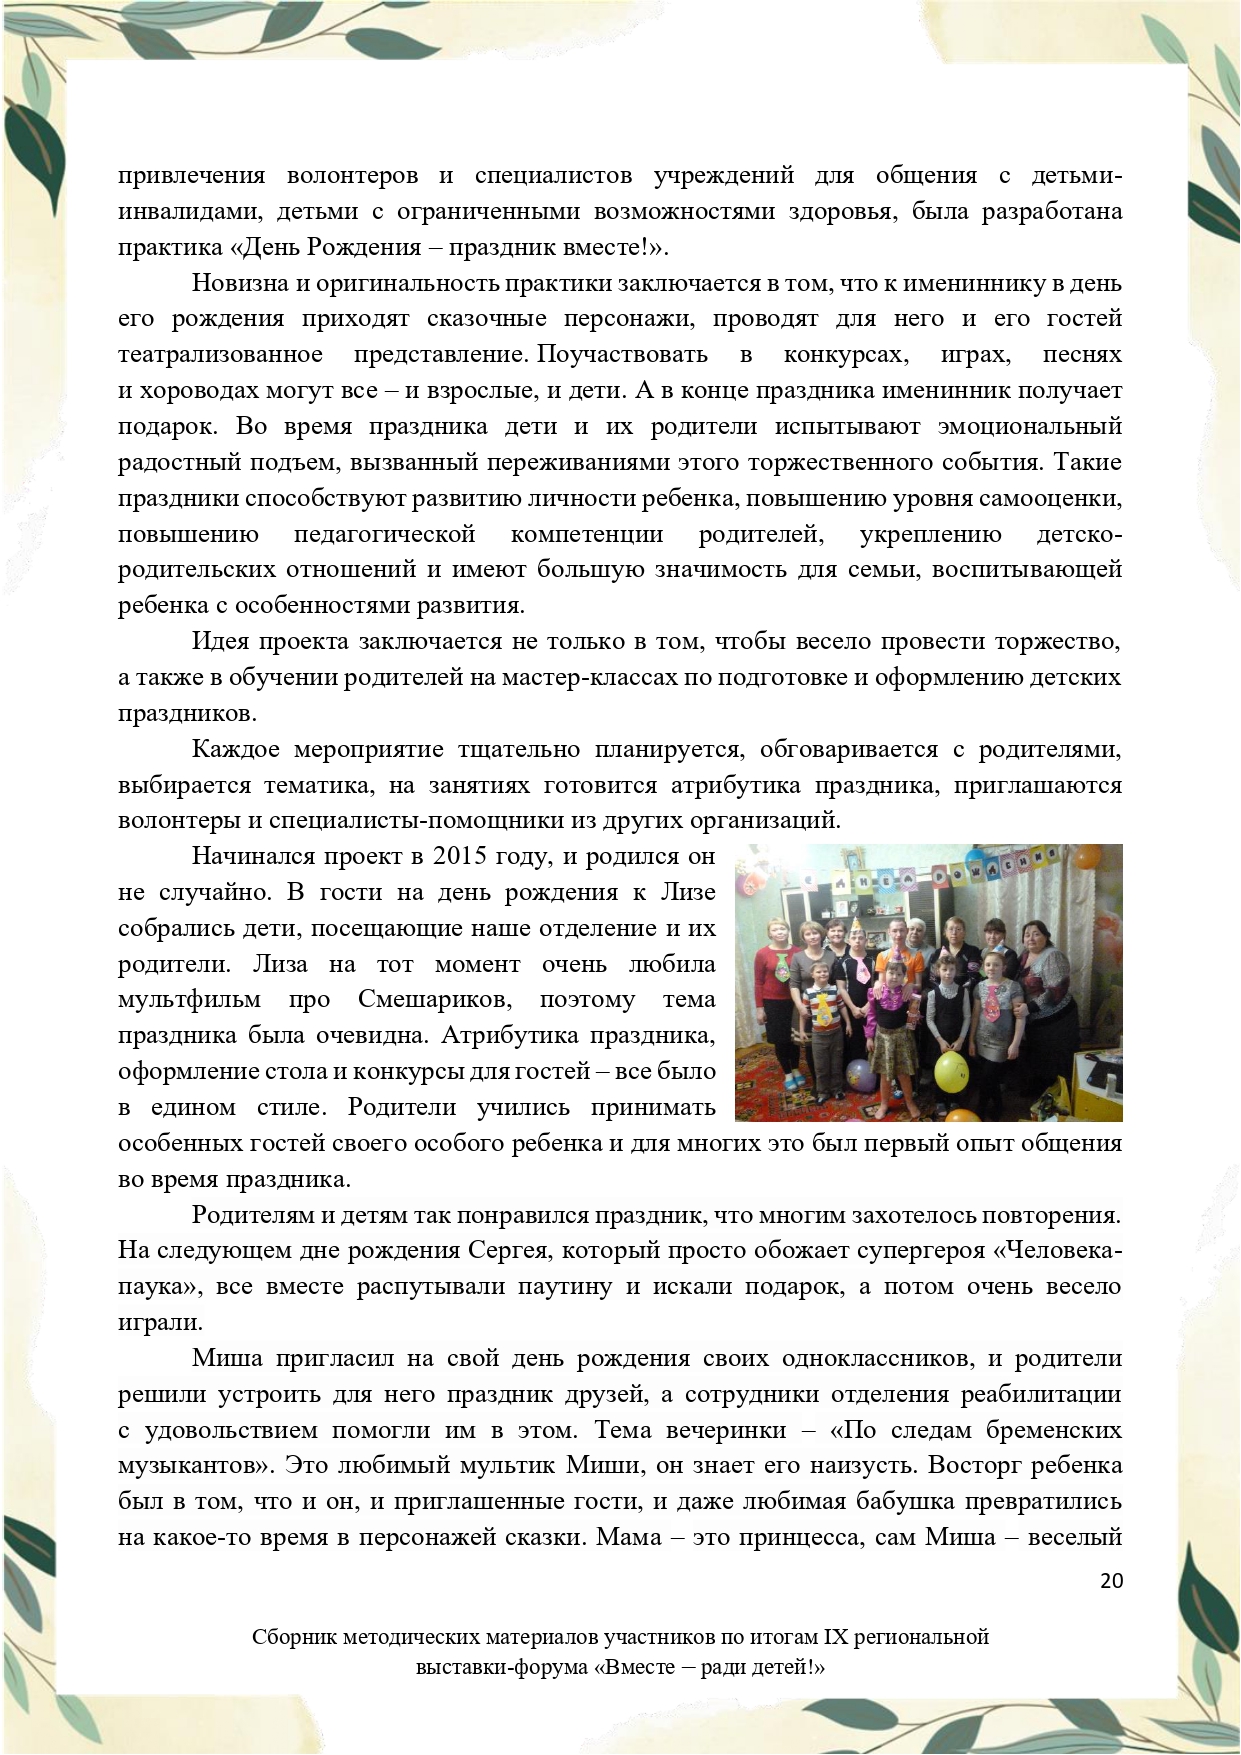 Sbornik_metodicheskikh_materialov_uchastnikov_IX_regionalnoy_vystavki-foruma_Vmeste__radi_detey_33__2023_page-0020